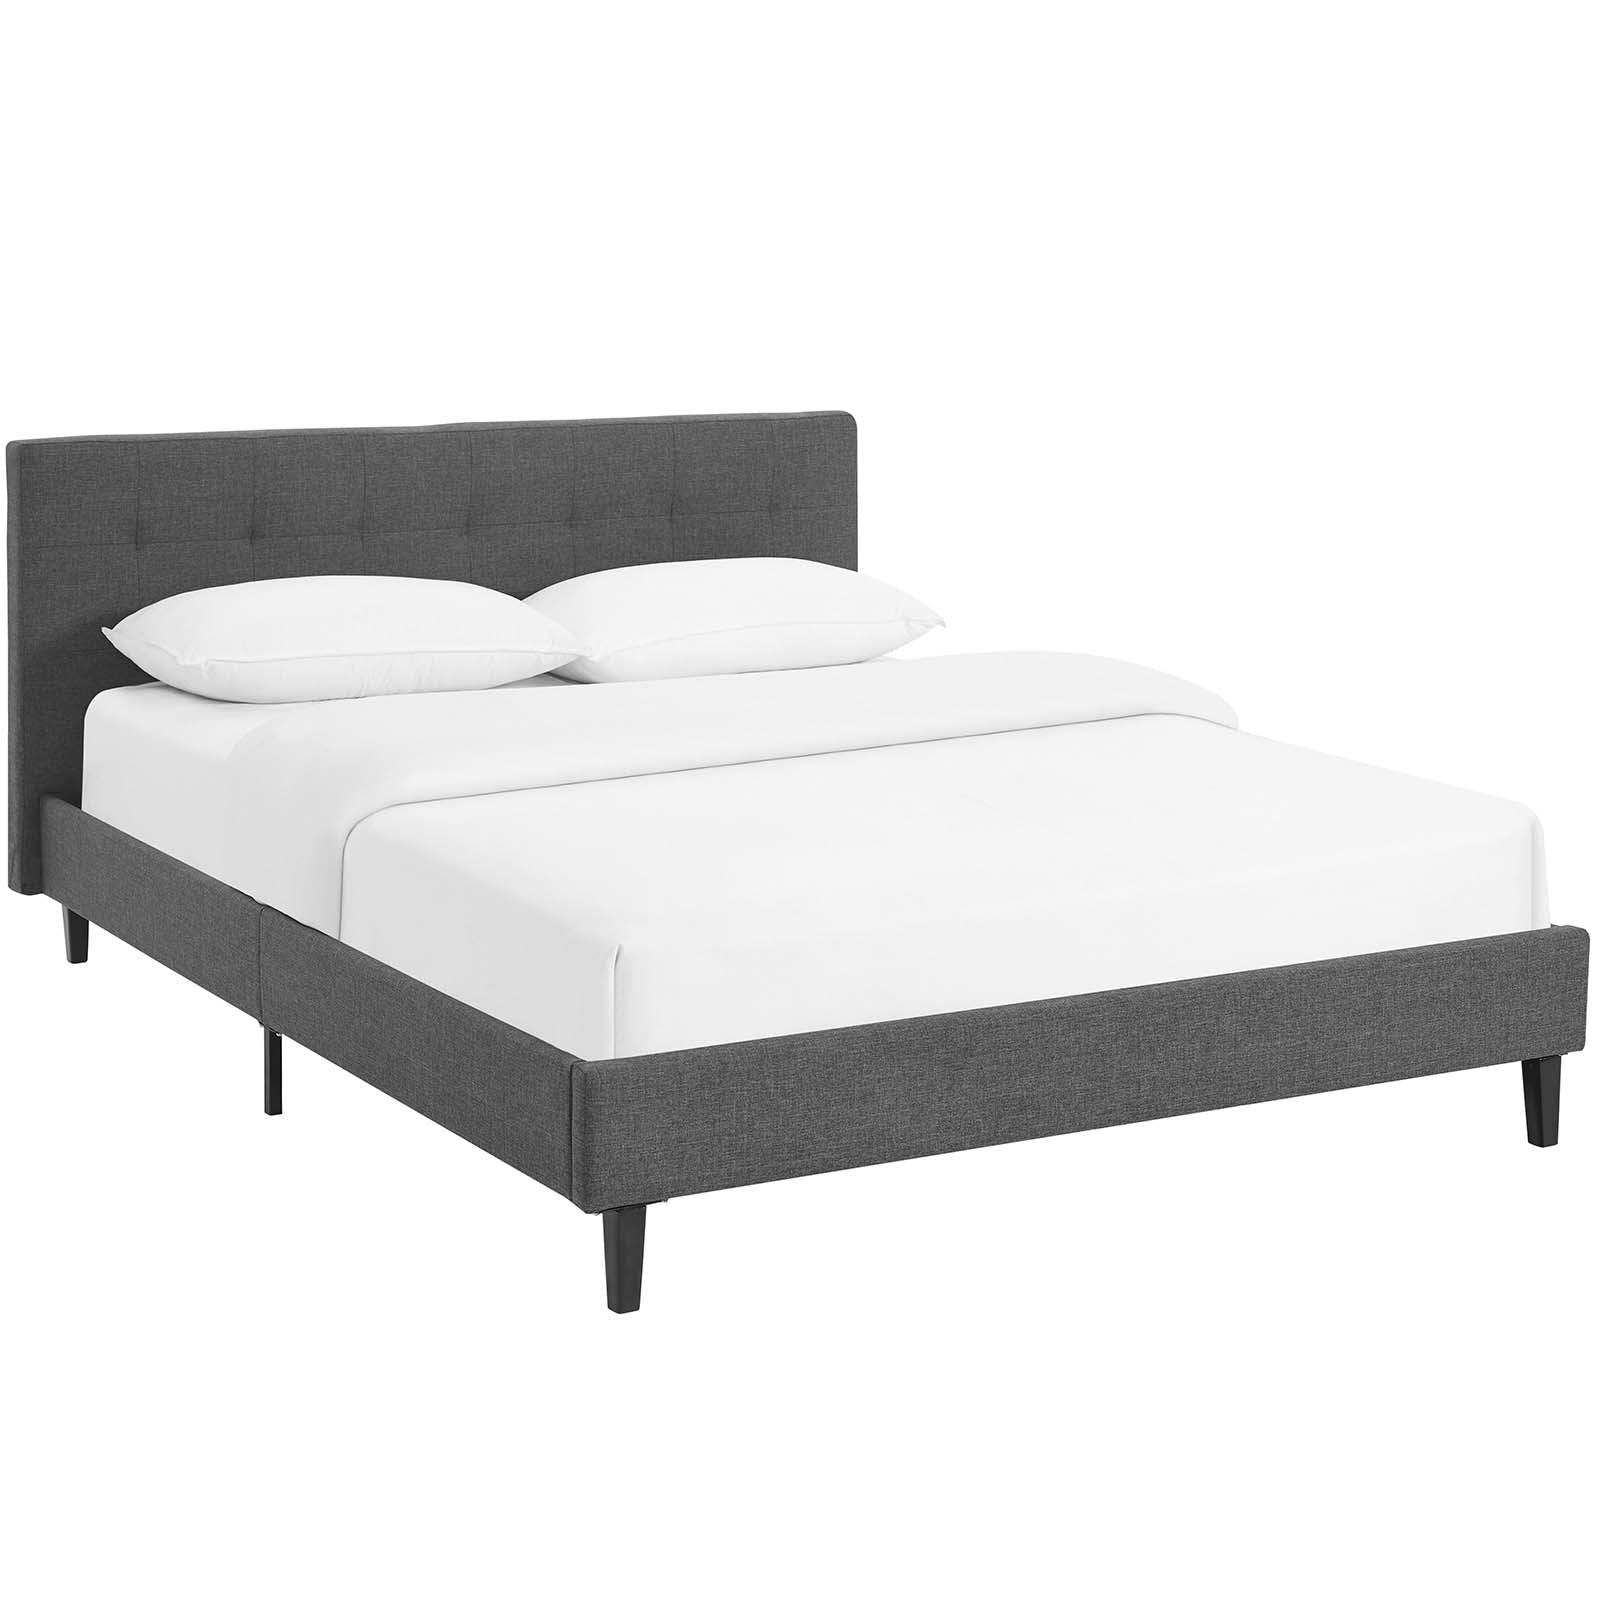 Modway Beds - Linnea Queen Bed Gray